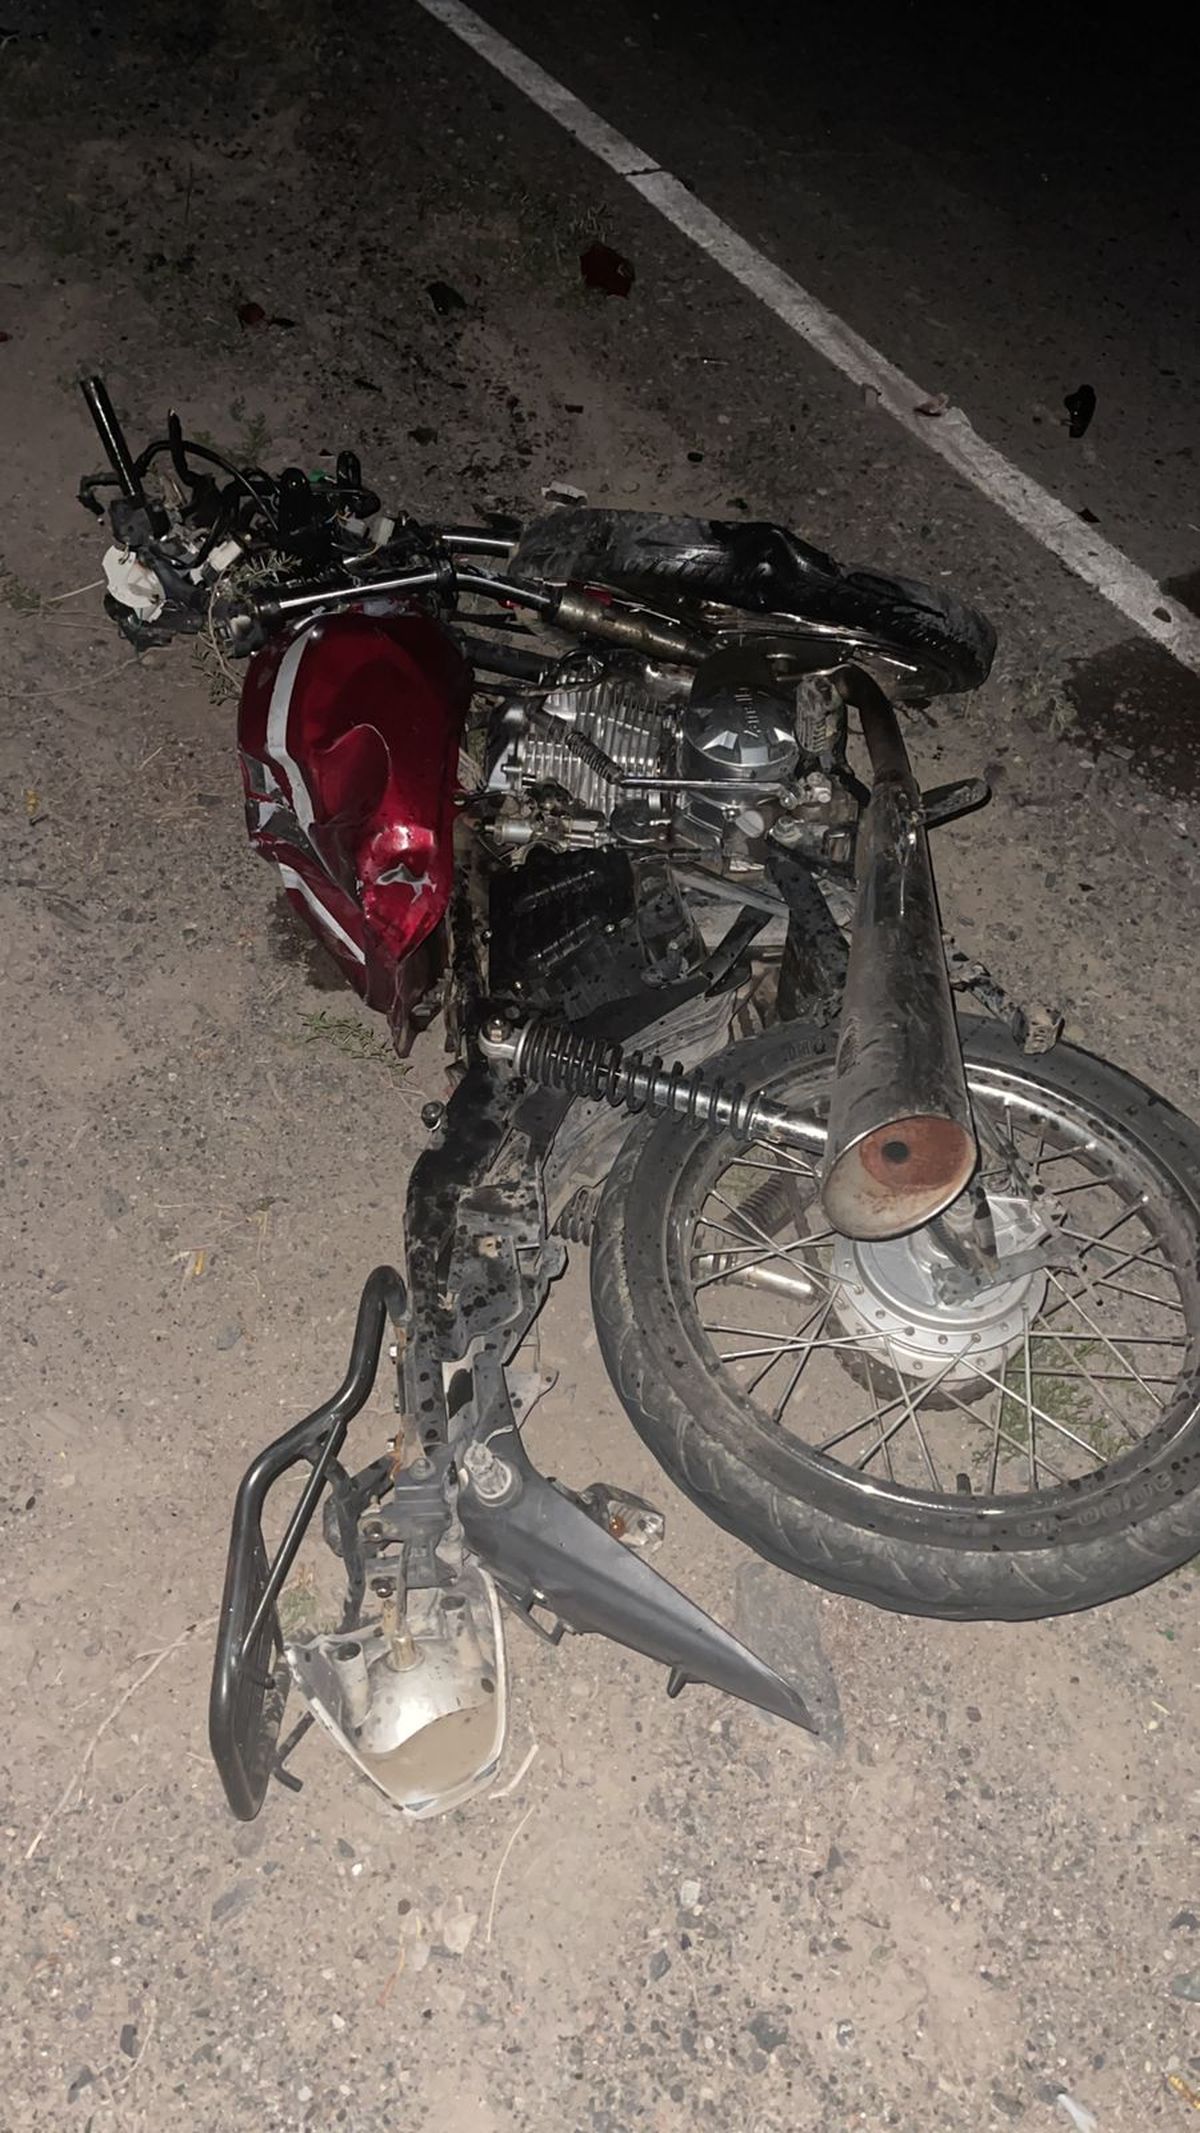 Tragedia: un motociclista murió atropellado por un camión